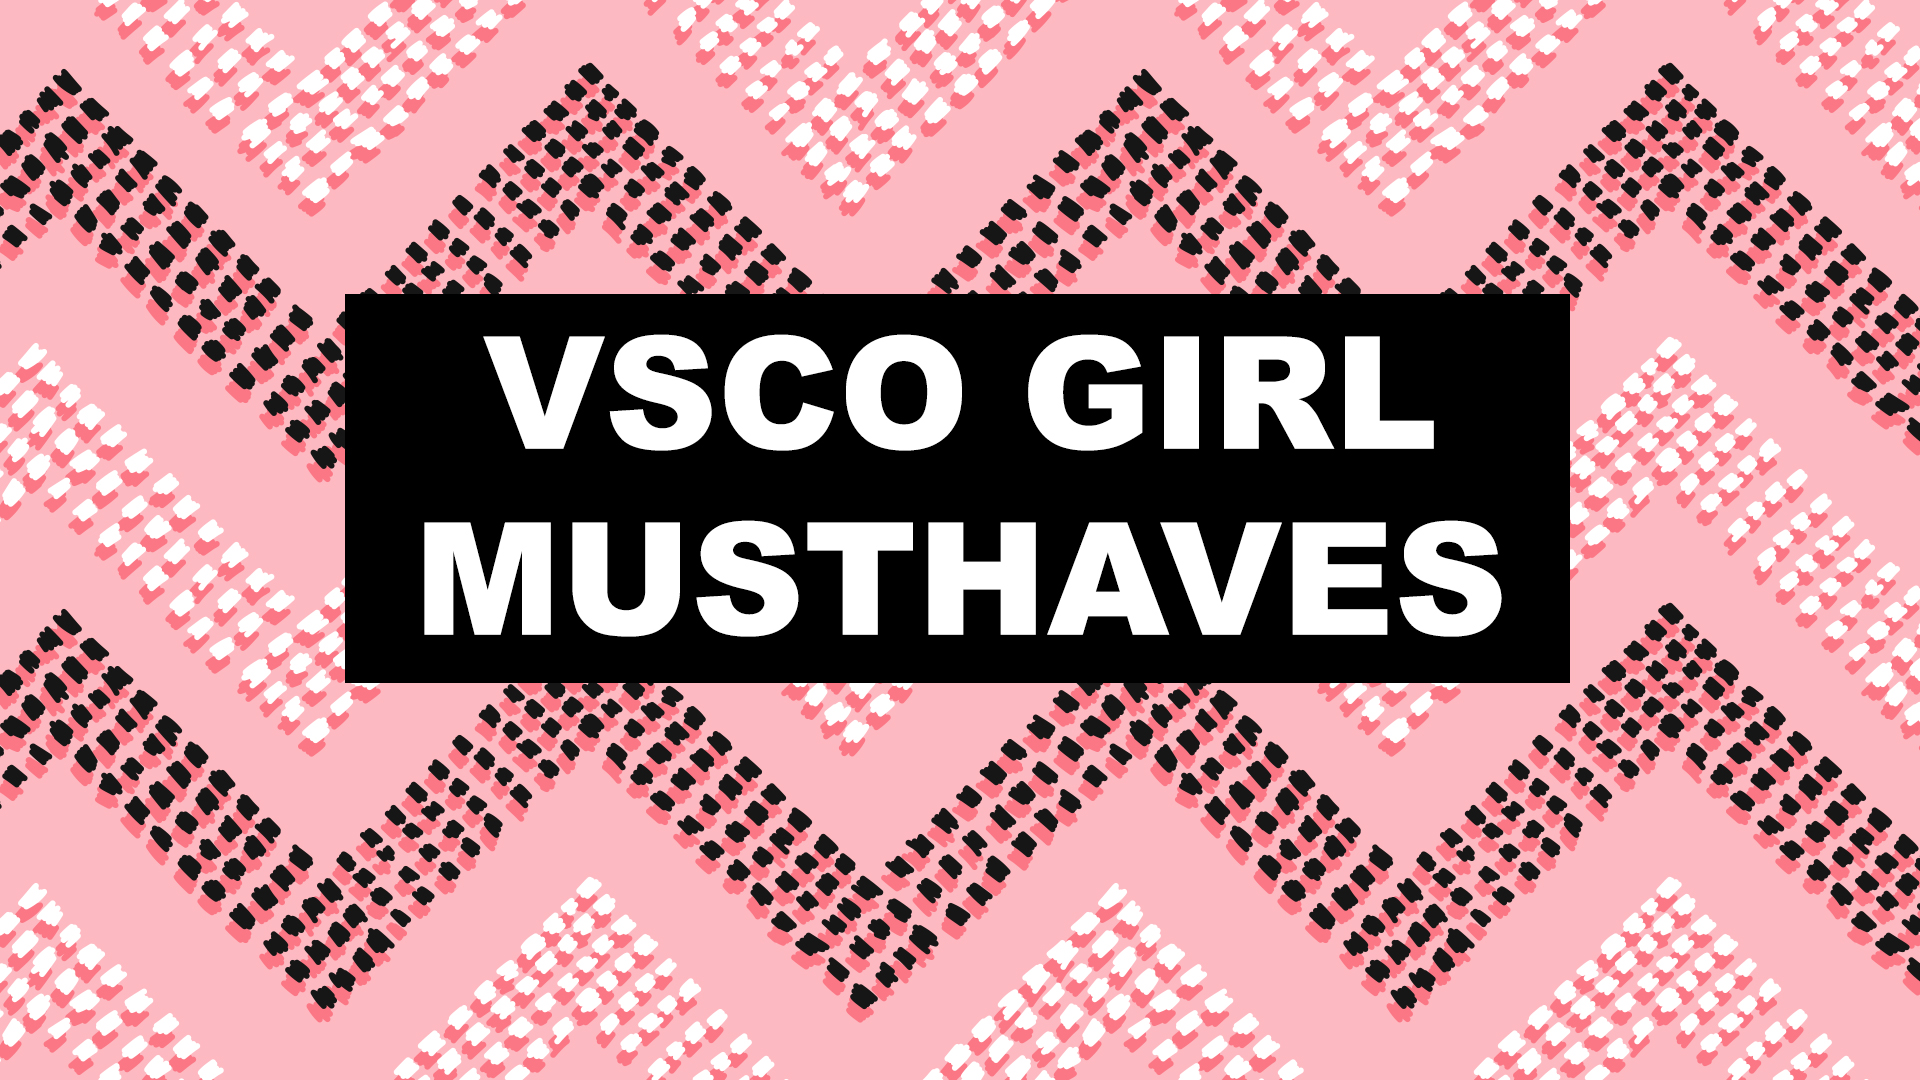 VSCO girl trend